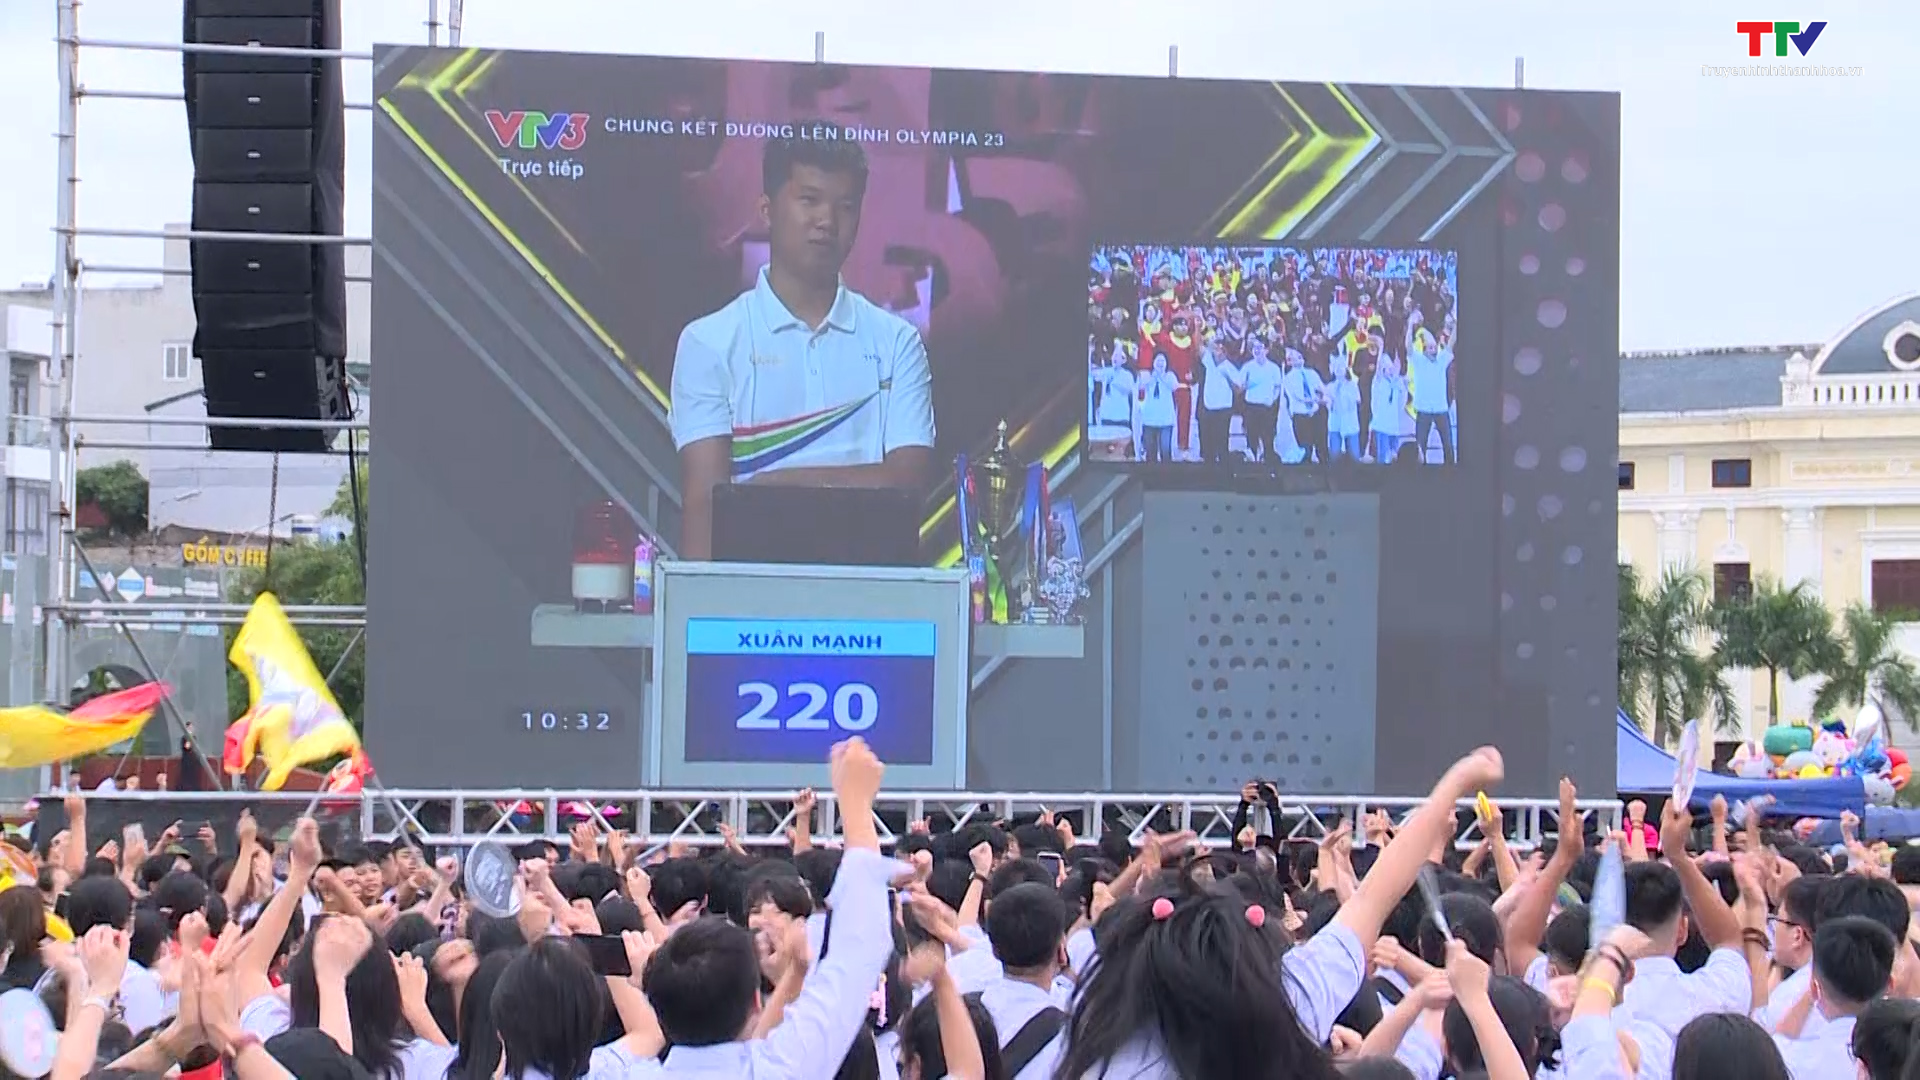 Học sinh Lê Xuân Mạnh, tỉnh Thanh Hóa giành ngôi quán quân Đường lên đỉnh Olympia lần thứ 23 - Ảnh 8.